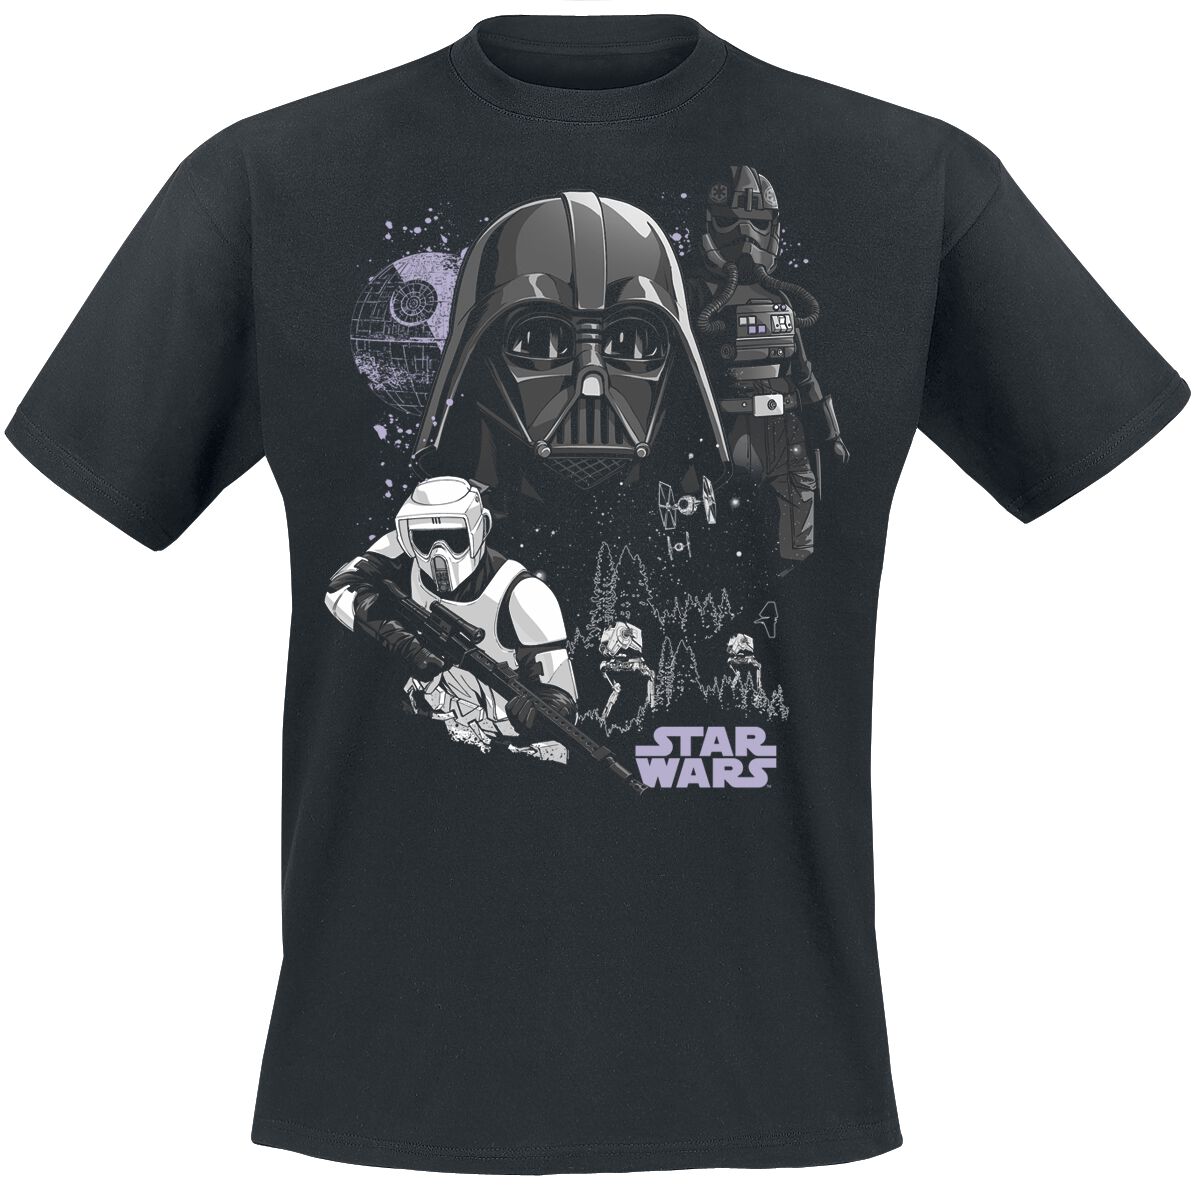 Star Wars T-Shirt - Battle Of Endor - S bis XXL - für Männer - Größe XL - schwarz  - EMP exklusives Merchandise!